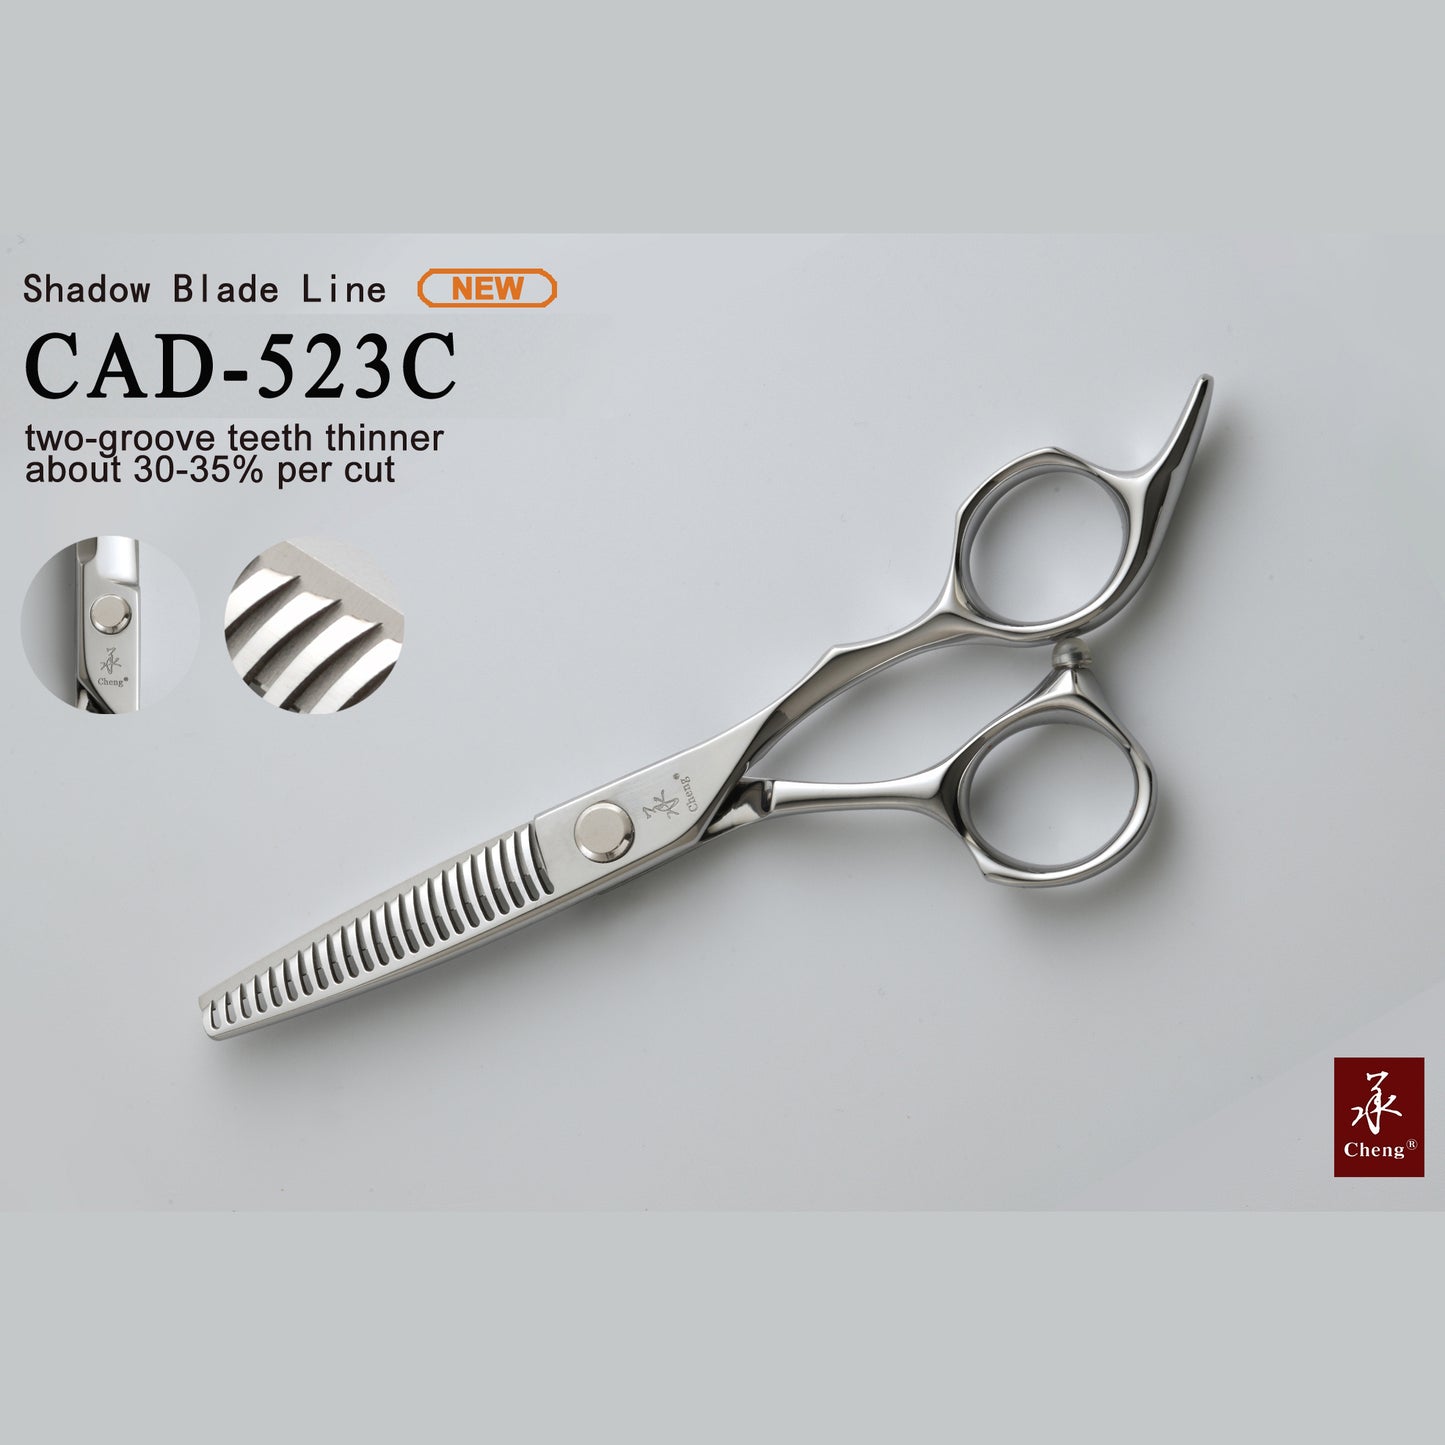 CHENG C-AAD-627XS Ciseaux à cheveux Cheng 2022 Nouveau Japon 6,0 pouces 2022 Nouveau style de poignée